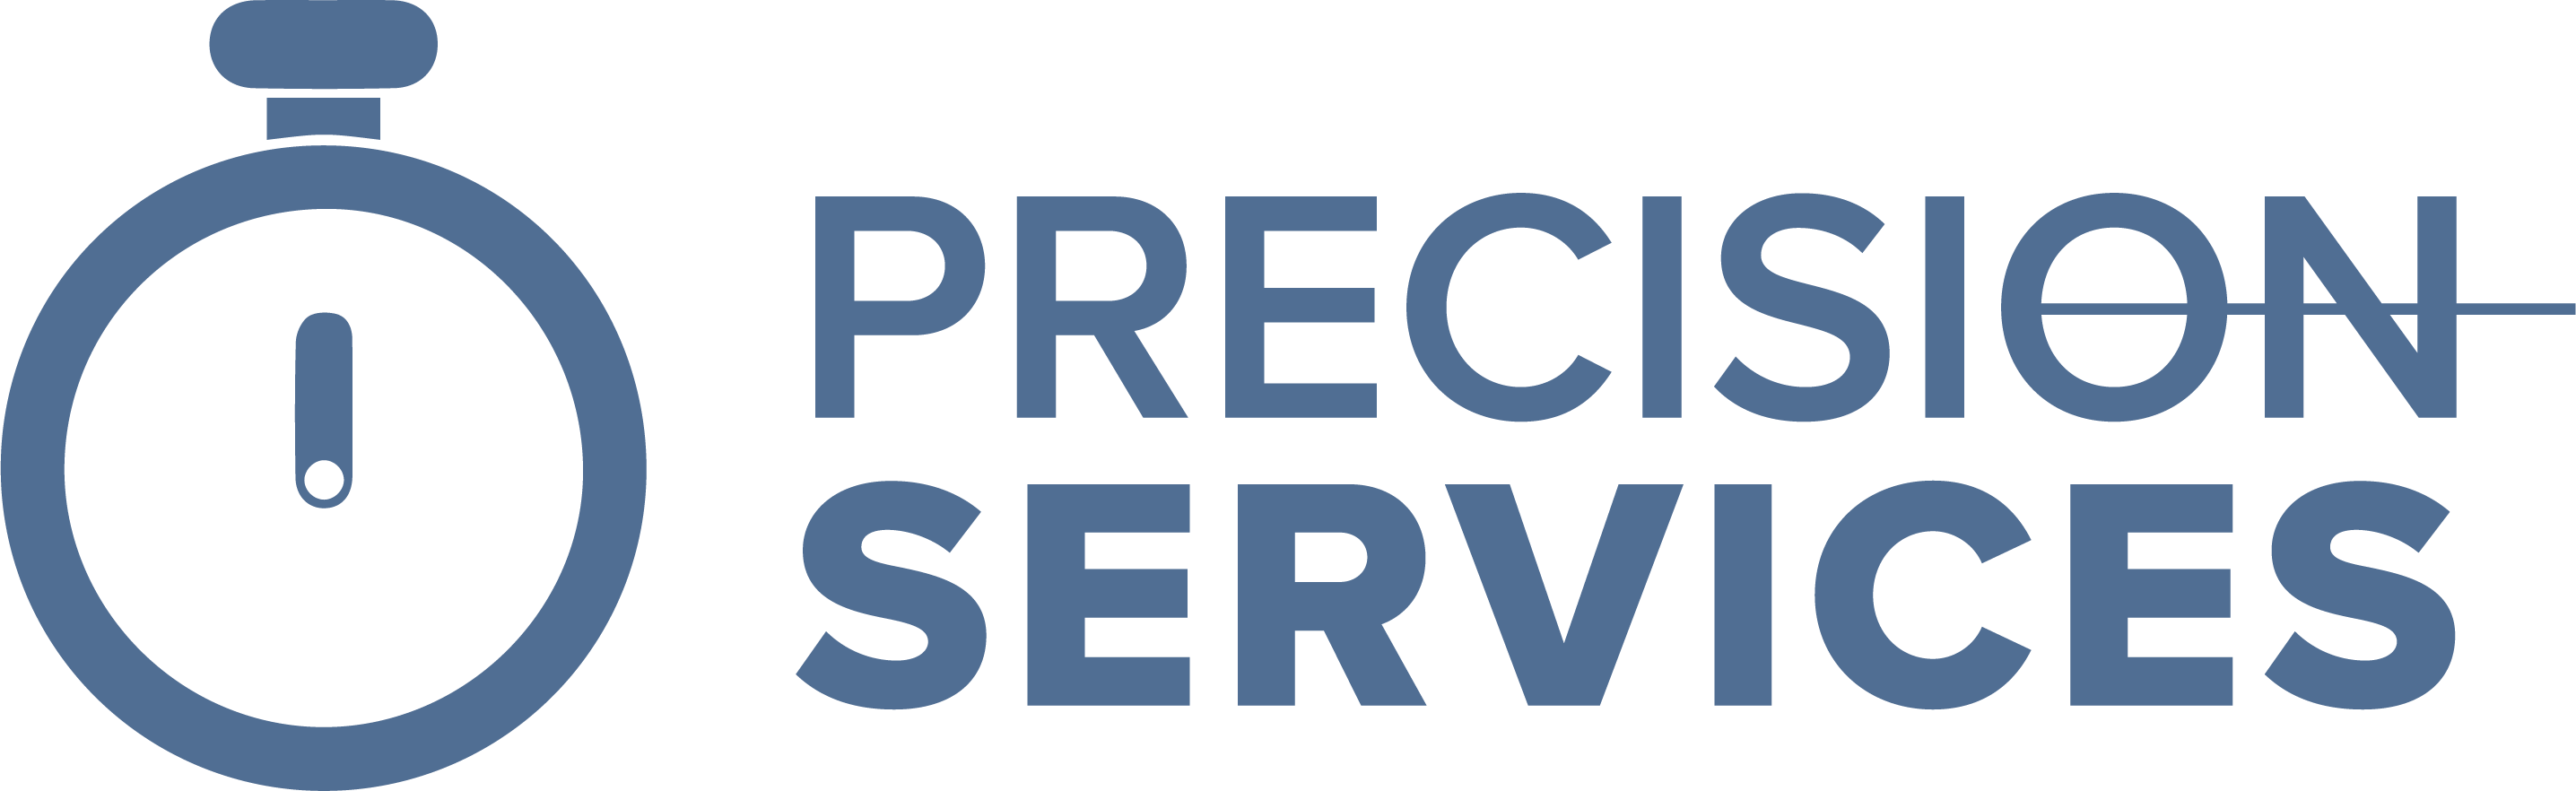 Precision Services Precision Services